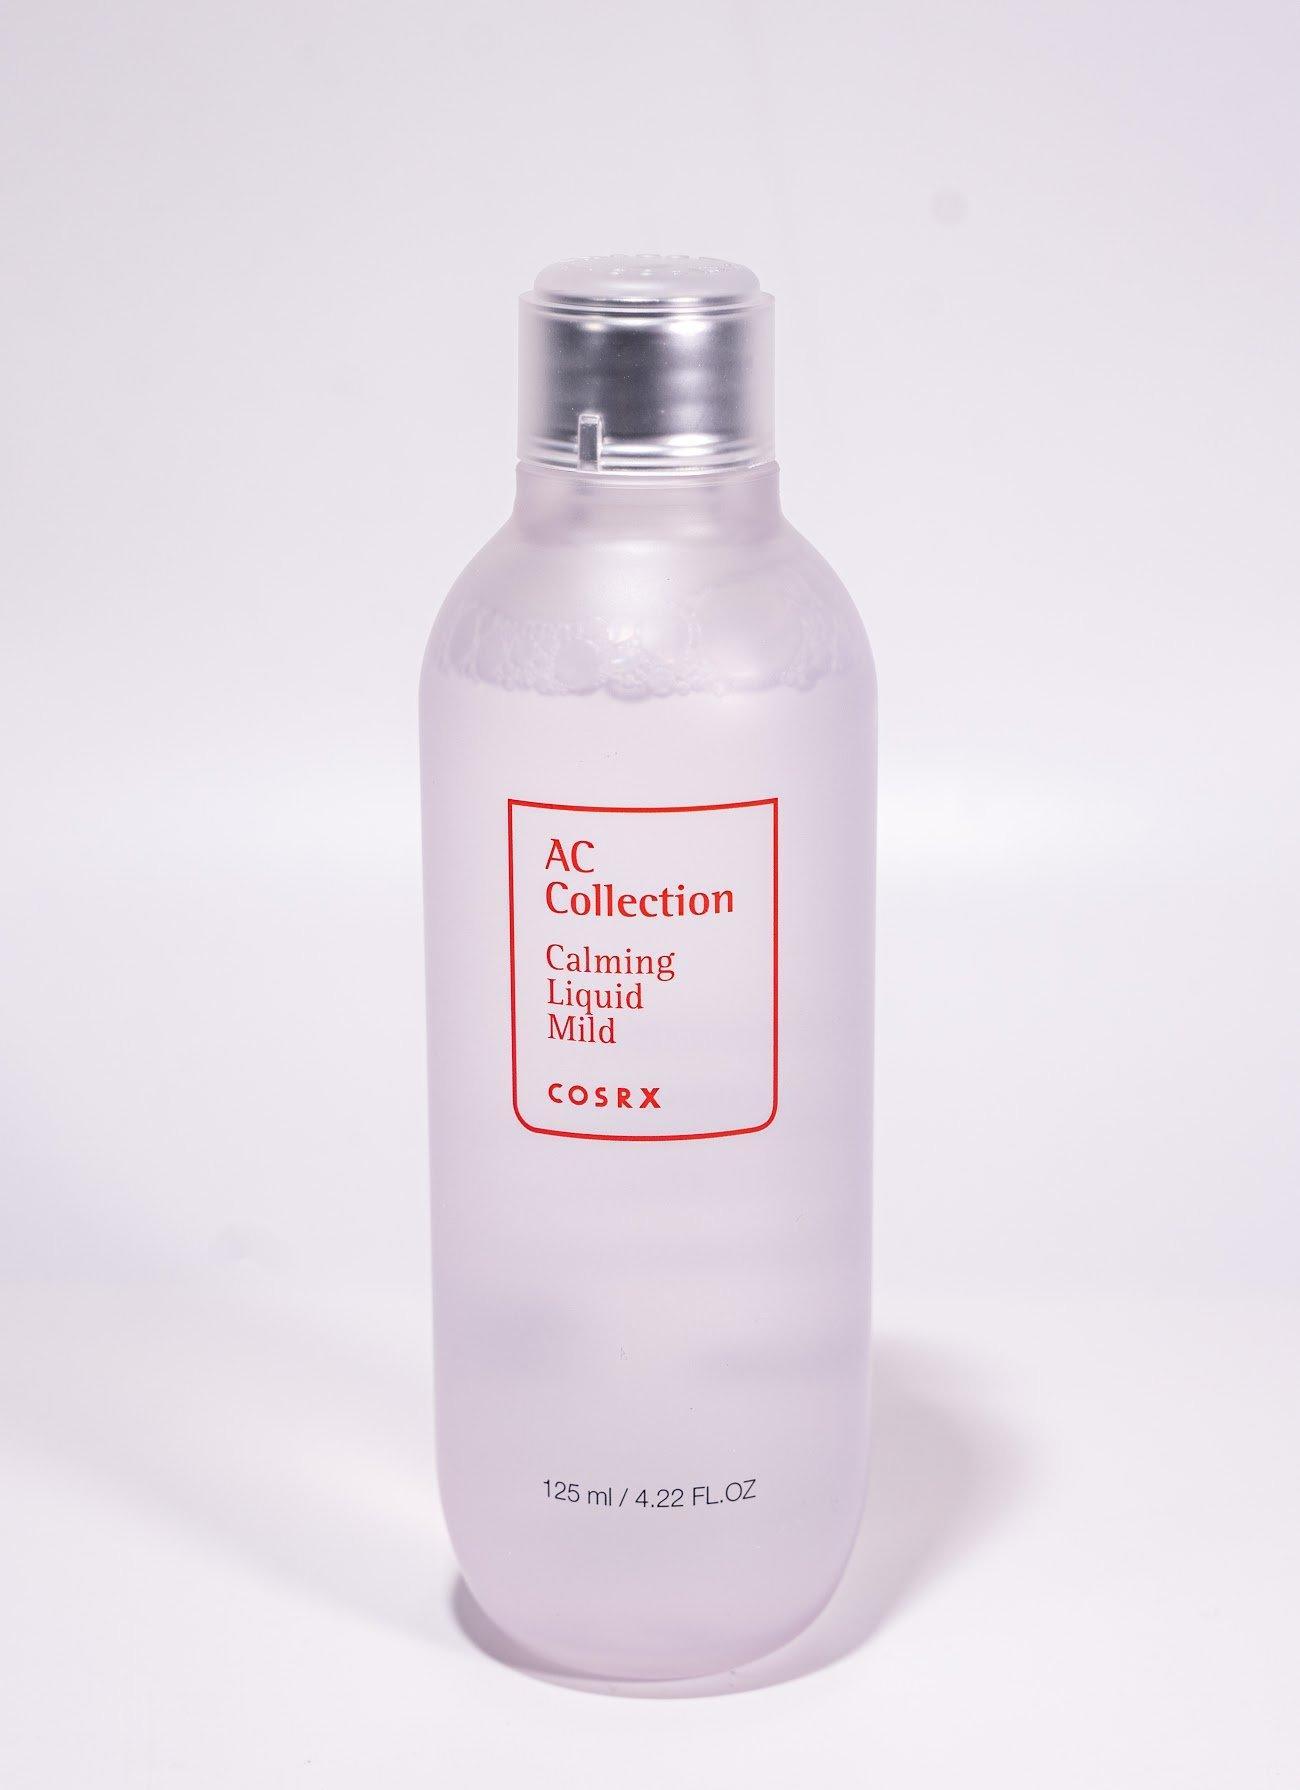 COSRX AC Collection Calming Liquid Mild 125ml